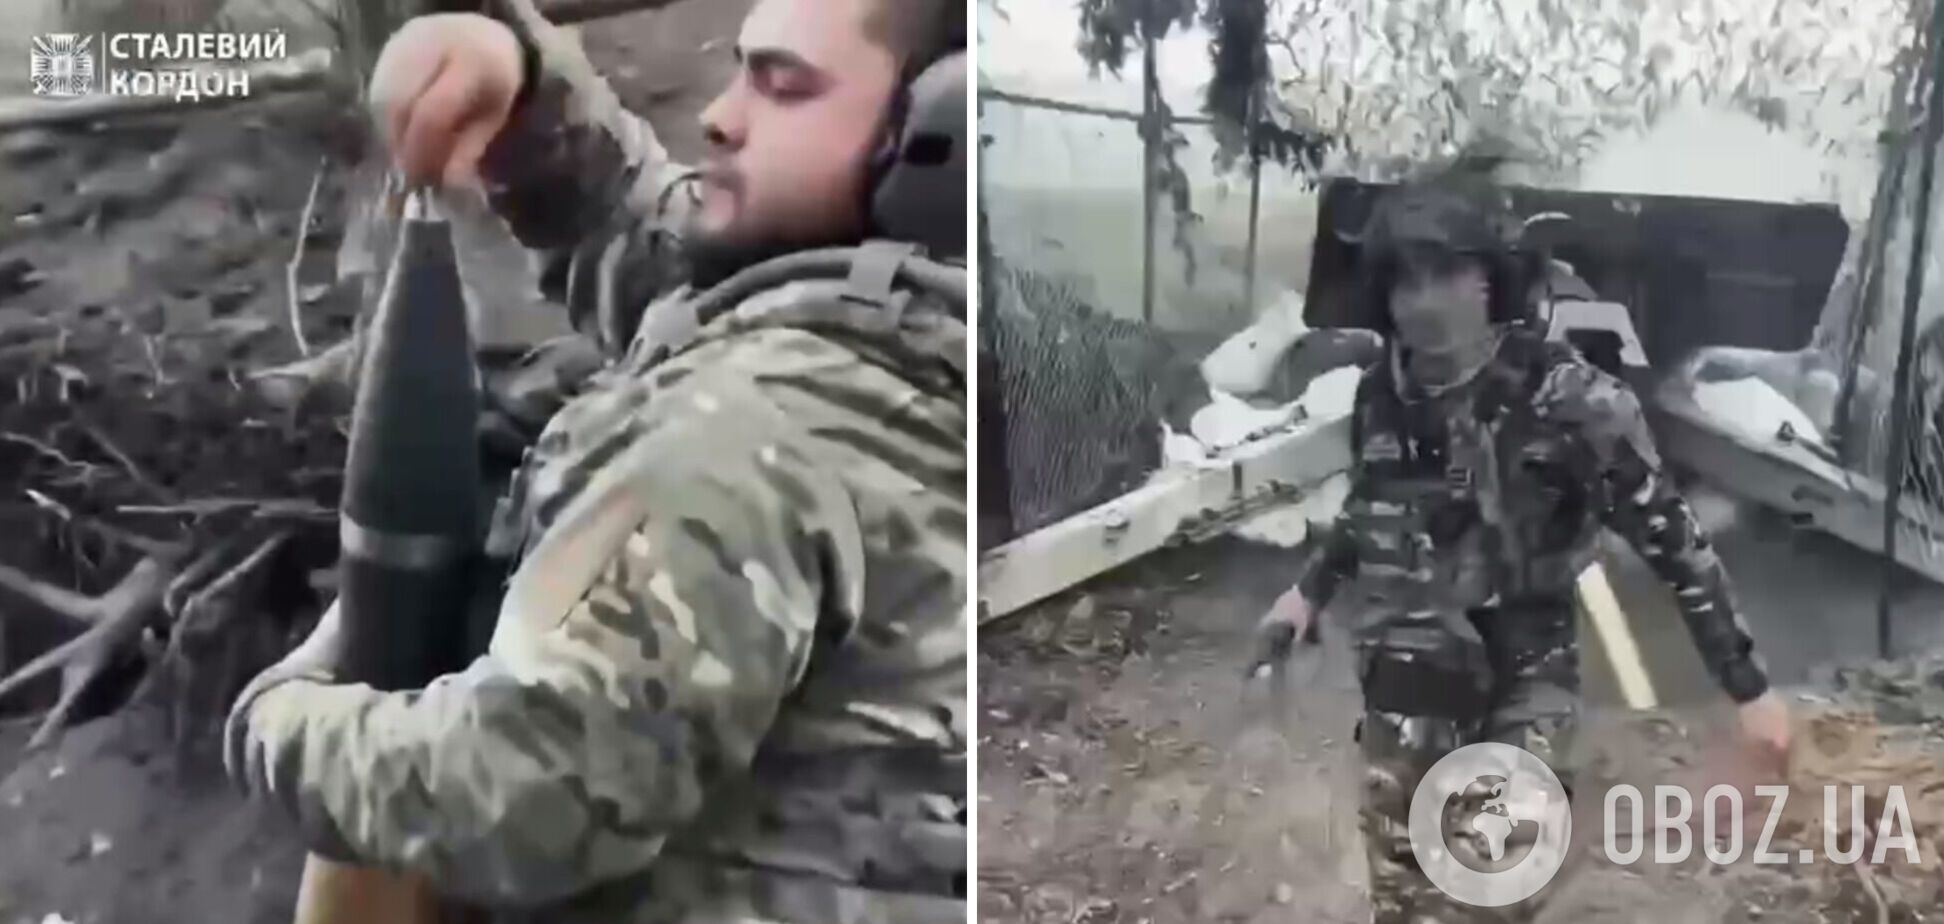 'Не верба бʼє, а арта': українські захисники показали, як надсилають 'вітання' окупантам. Відео